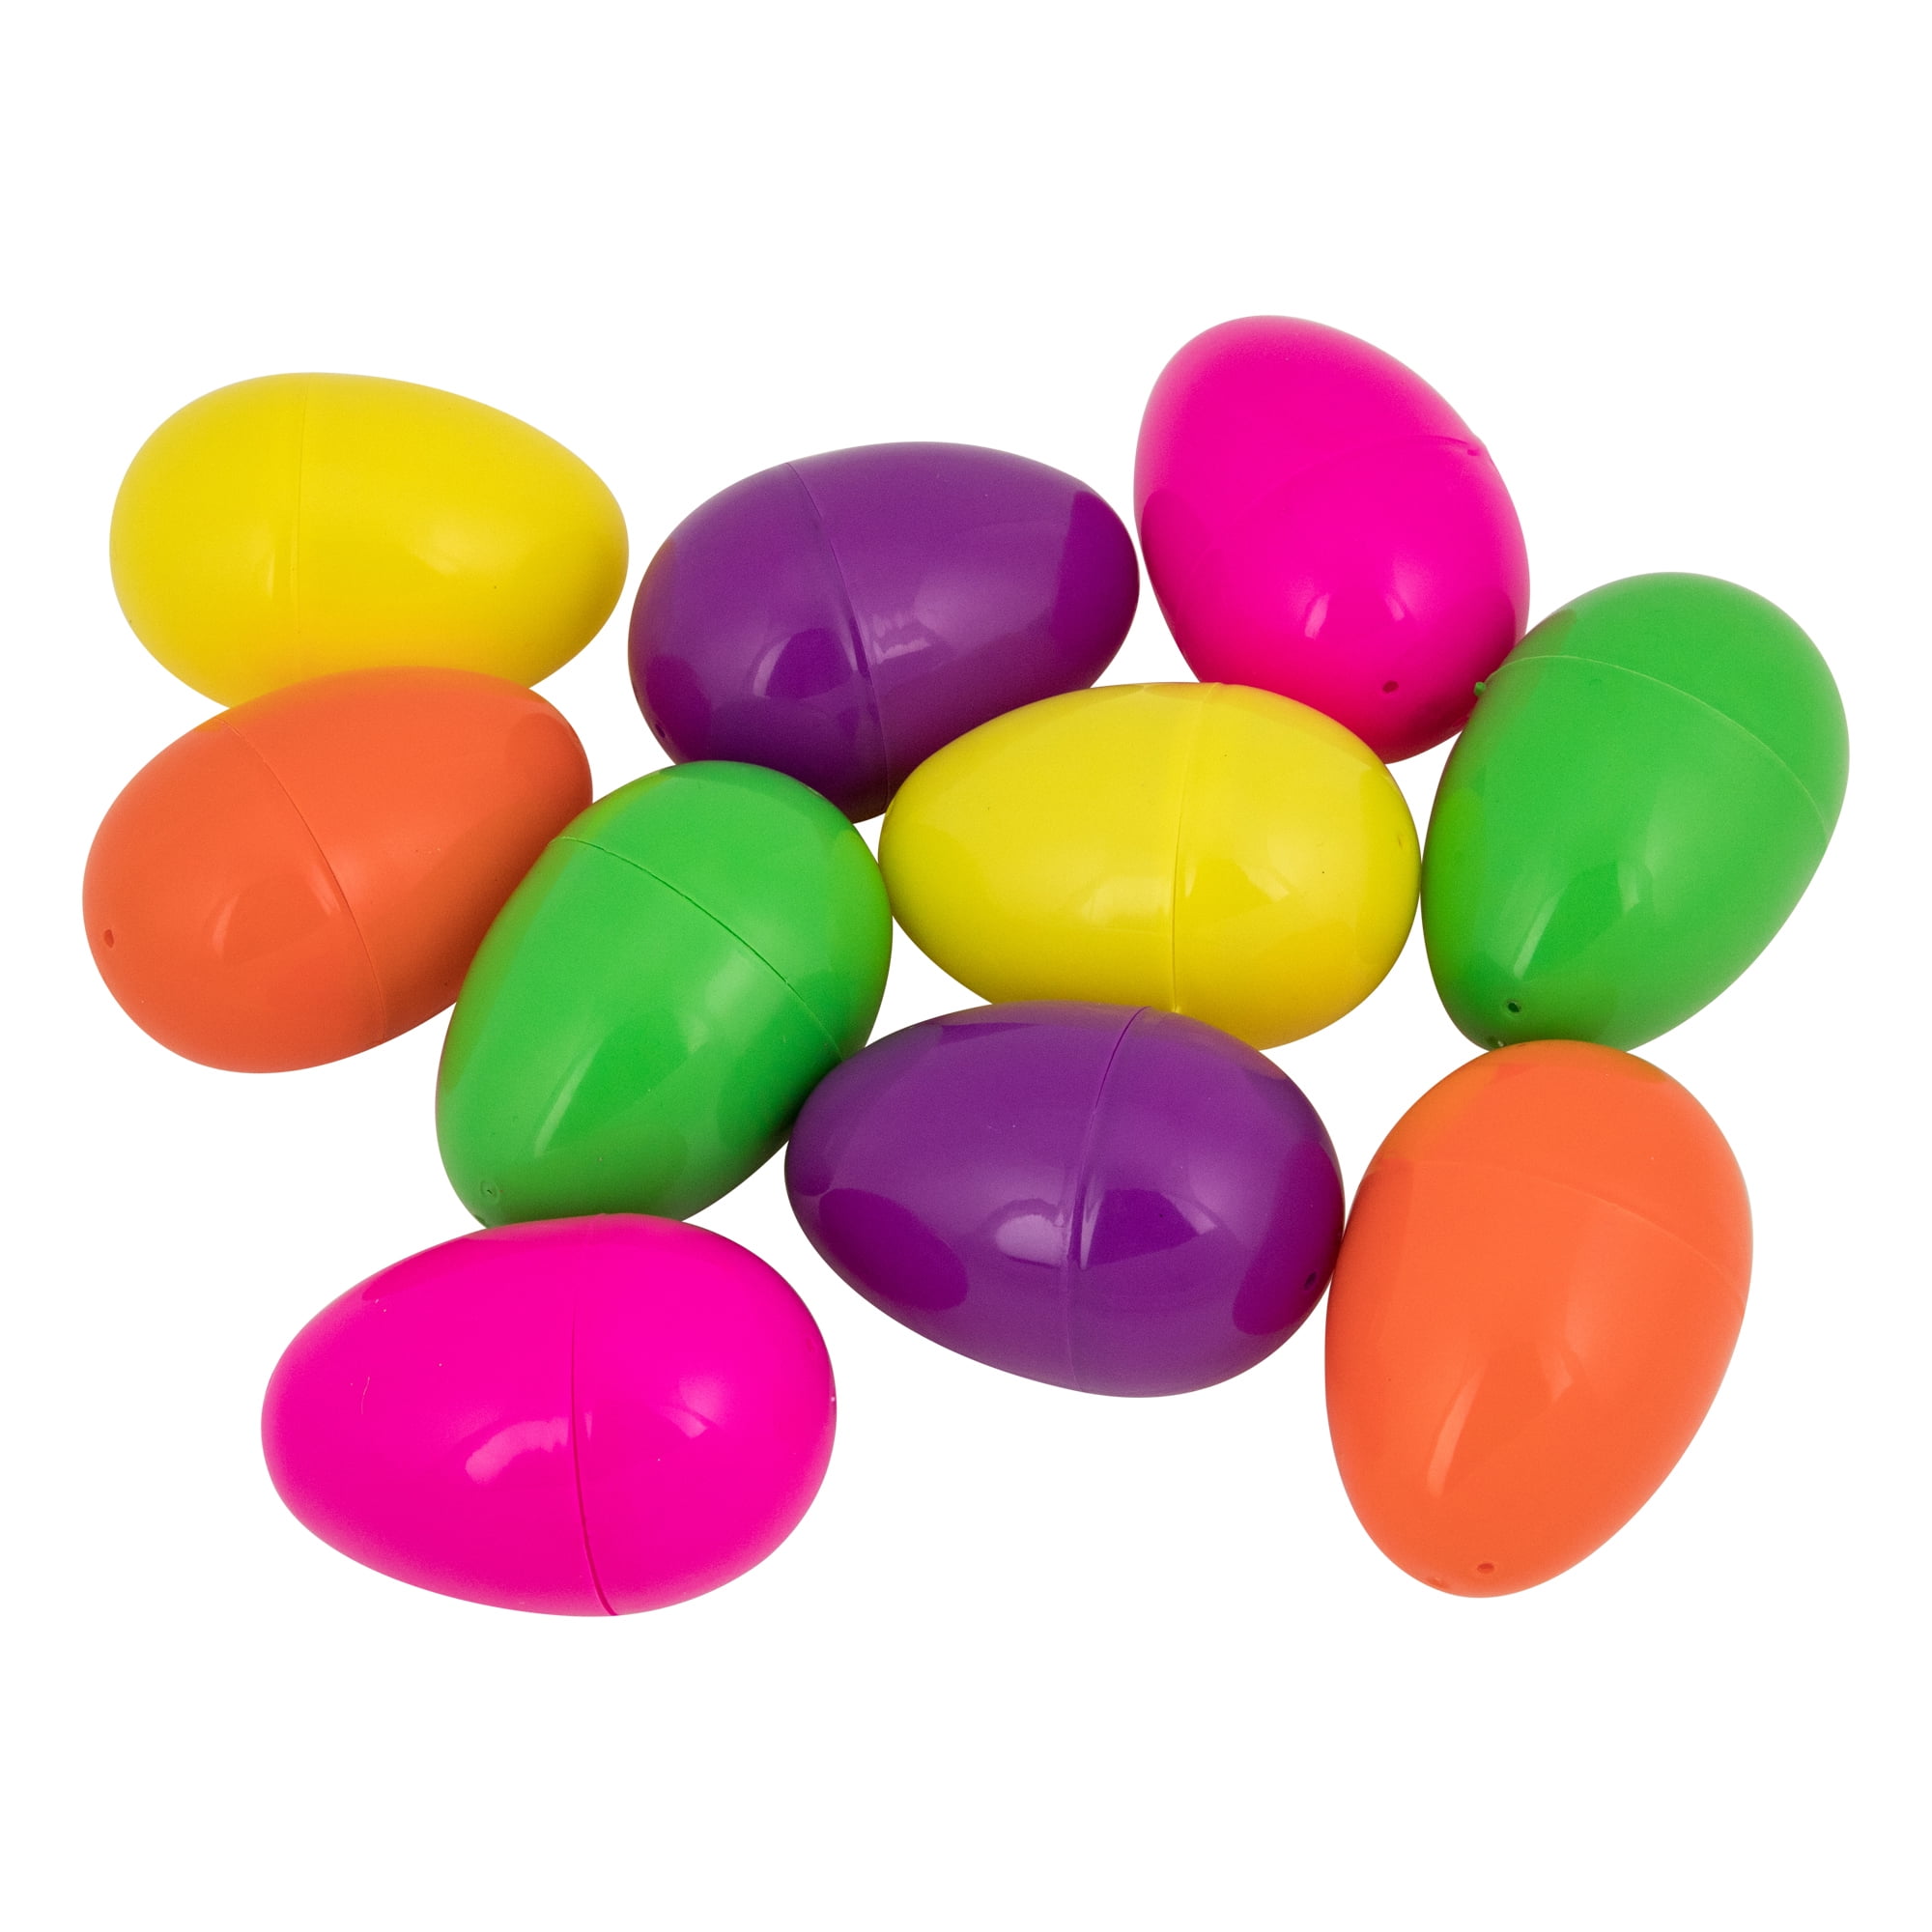 Spritz 5" Plastic Easter Golden Egg Ages 3 B17 for sale online 